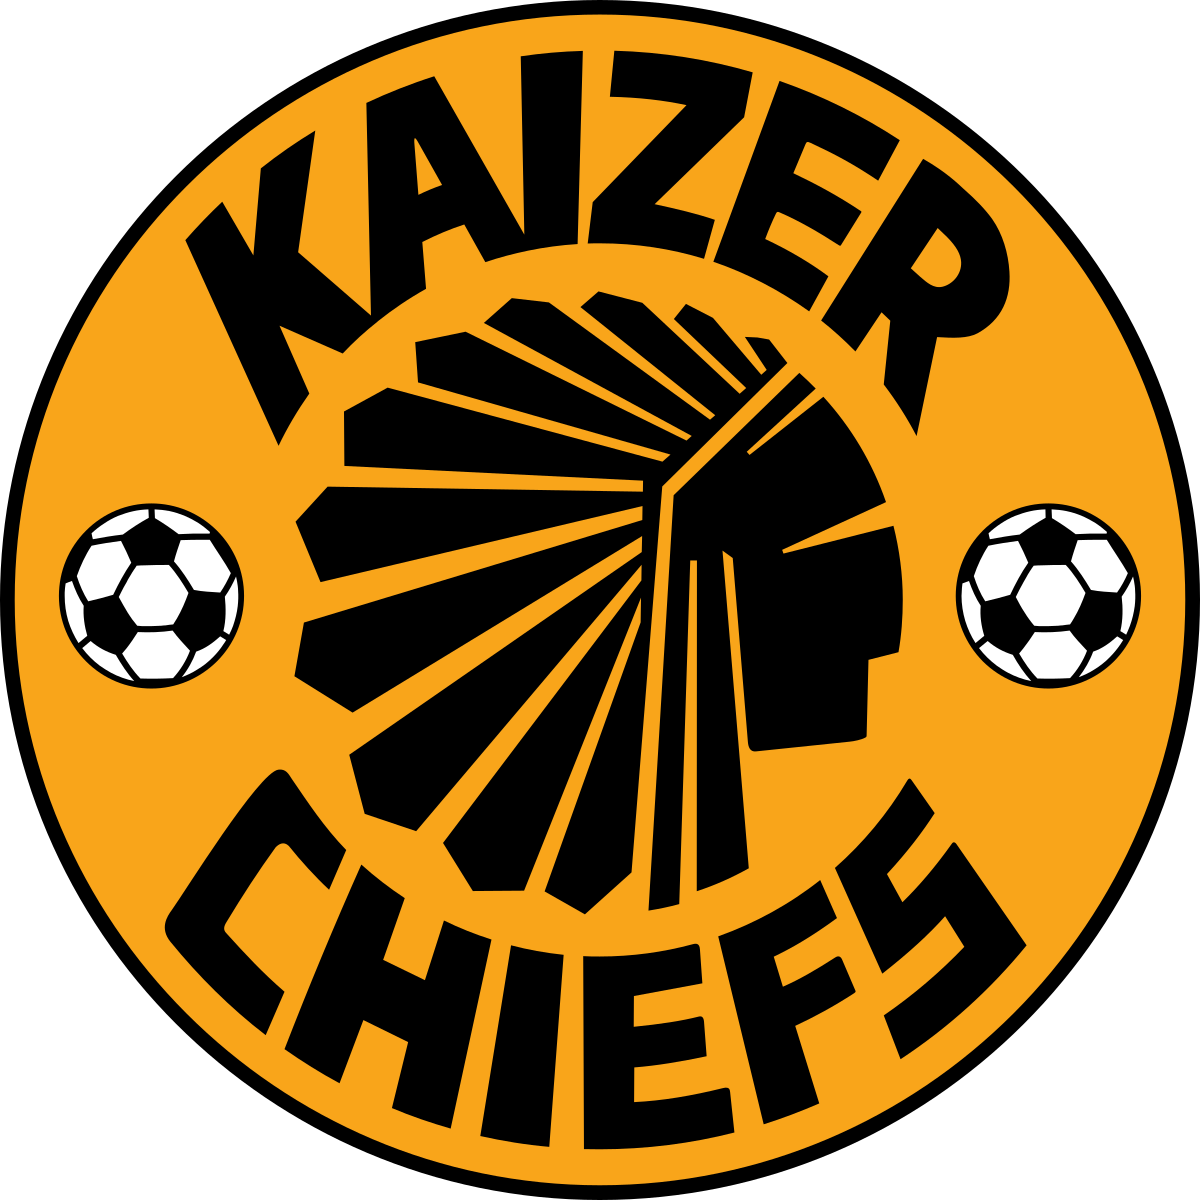 kaizer chiefs soccer jersey